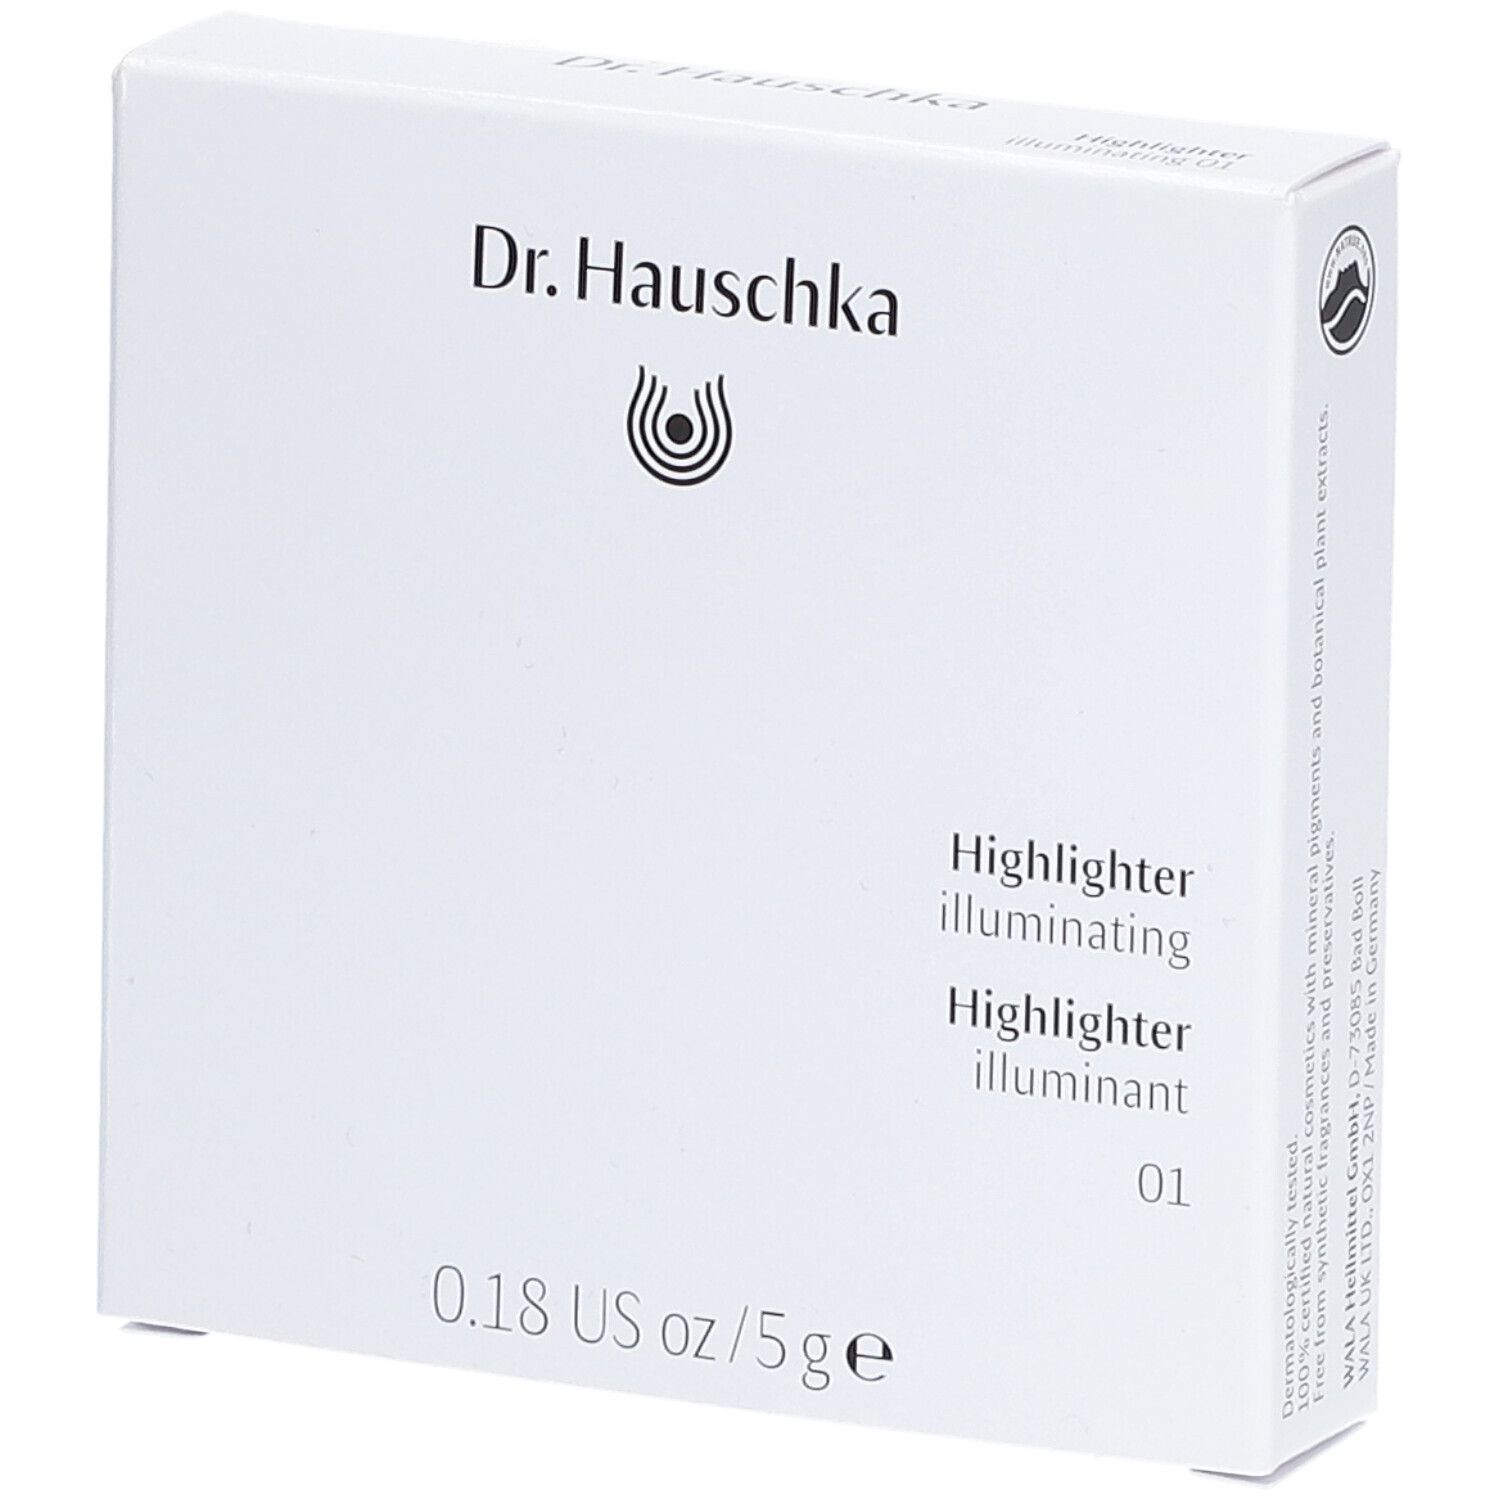 Dr. Hauschka Highlighter 01 Illuminant